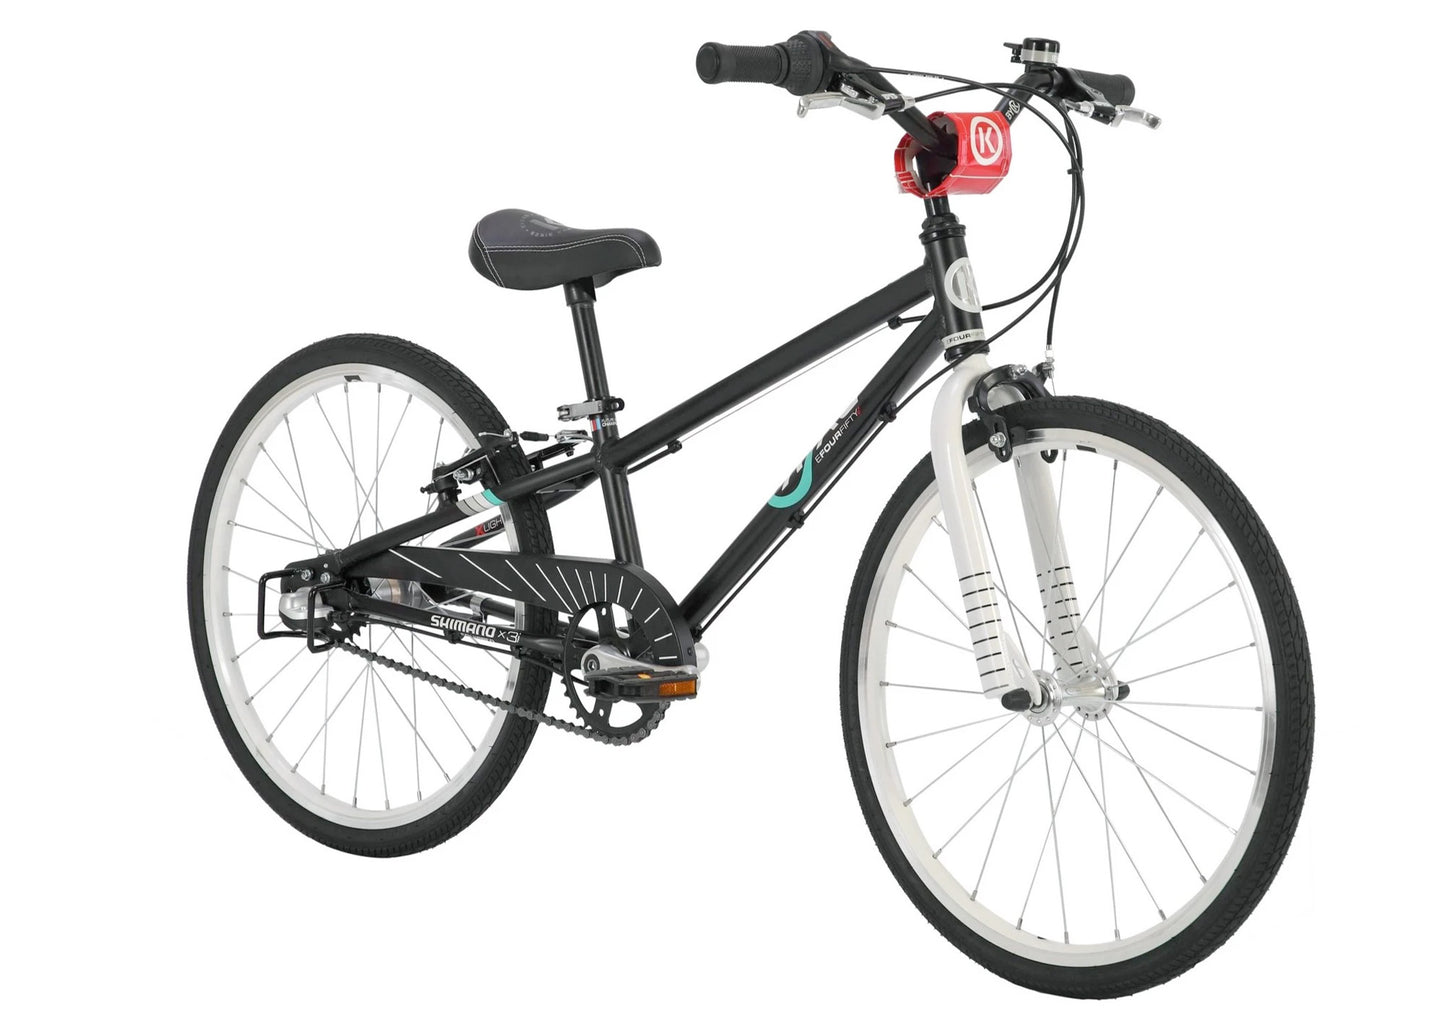 BYK E450X3i Boys Bike, Black/White - Rider height: 110-132cm, buy at Woolys Wheels Sydney